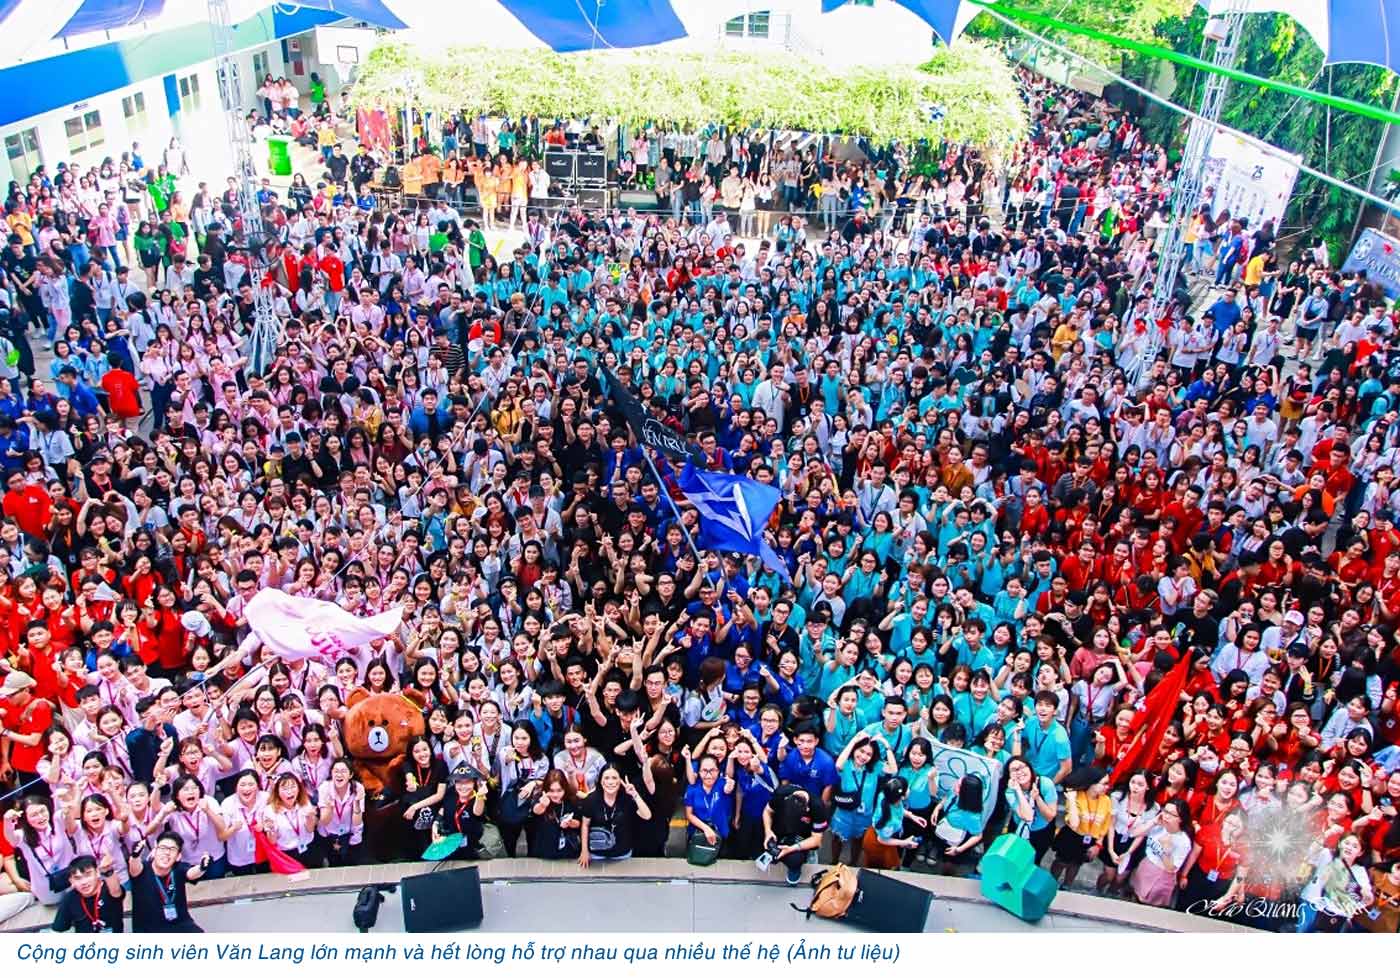 Đại học Văn Lang tổ chức ngày hội Tư vấn tuyển sinh online 2020 - Ảnh 6